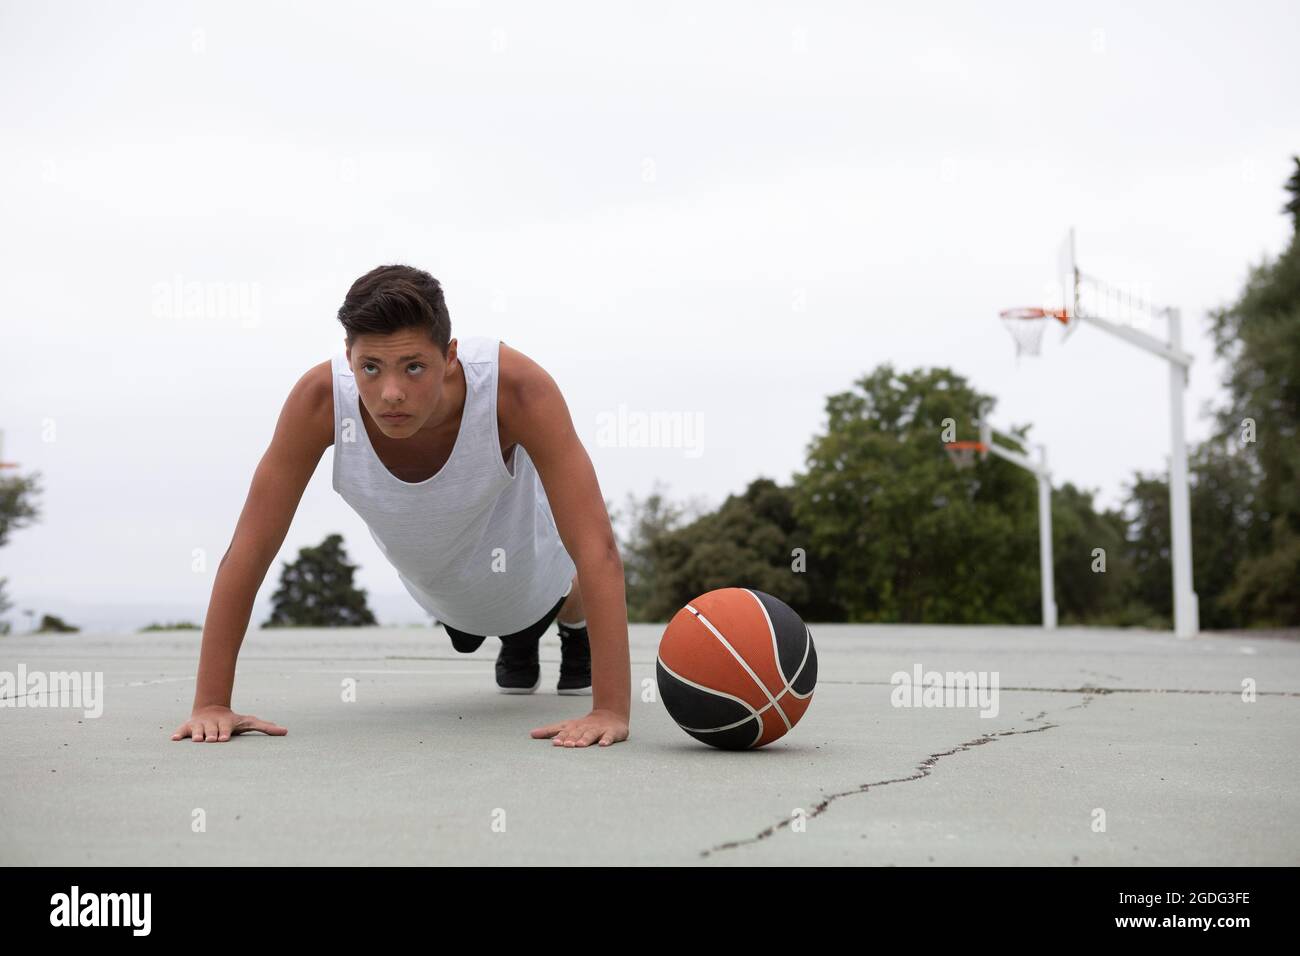 Les adolescents de sexe masculin de basket-ball sur un terrain de basket-ball faire poussez se lève Banque D'Images